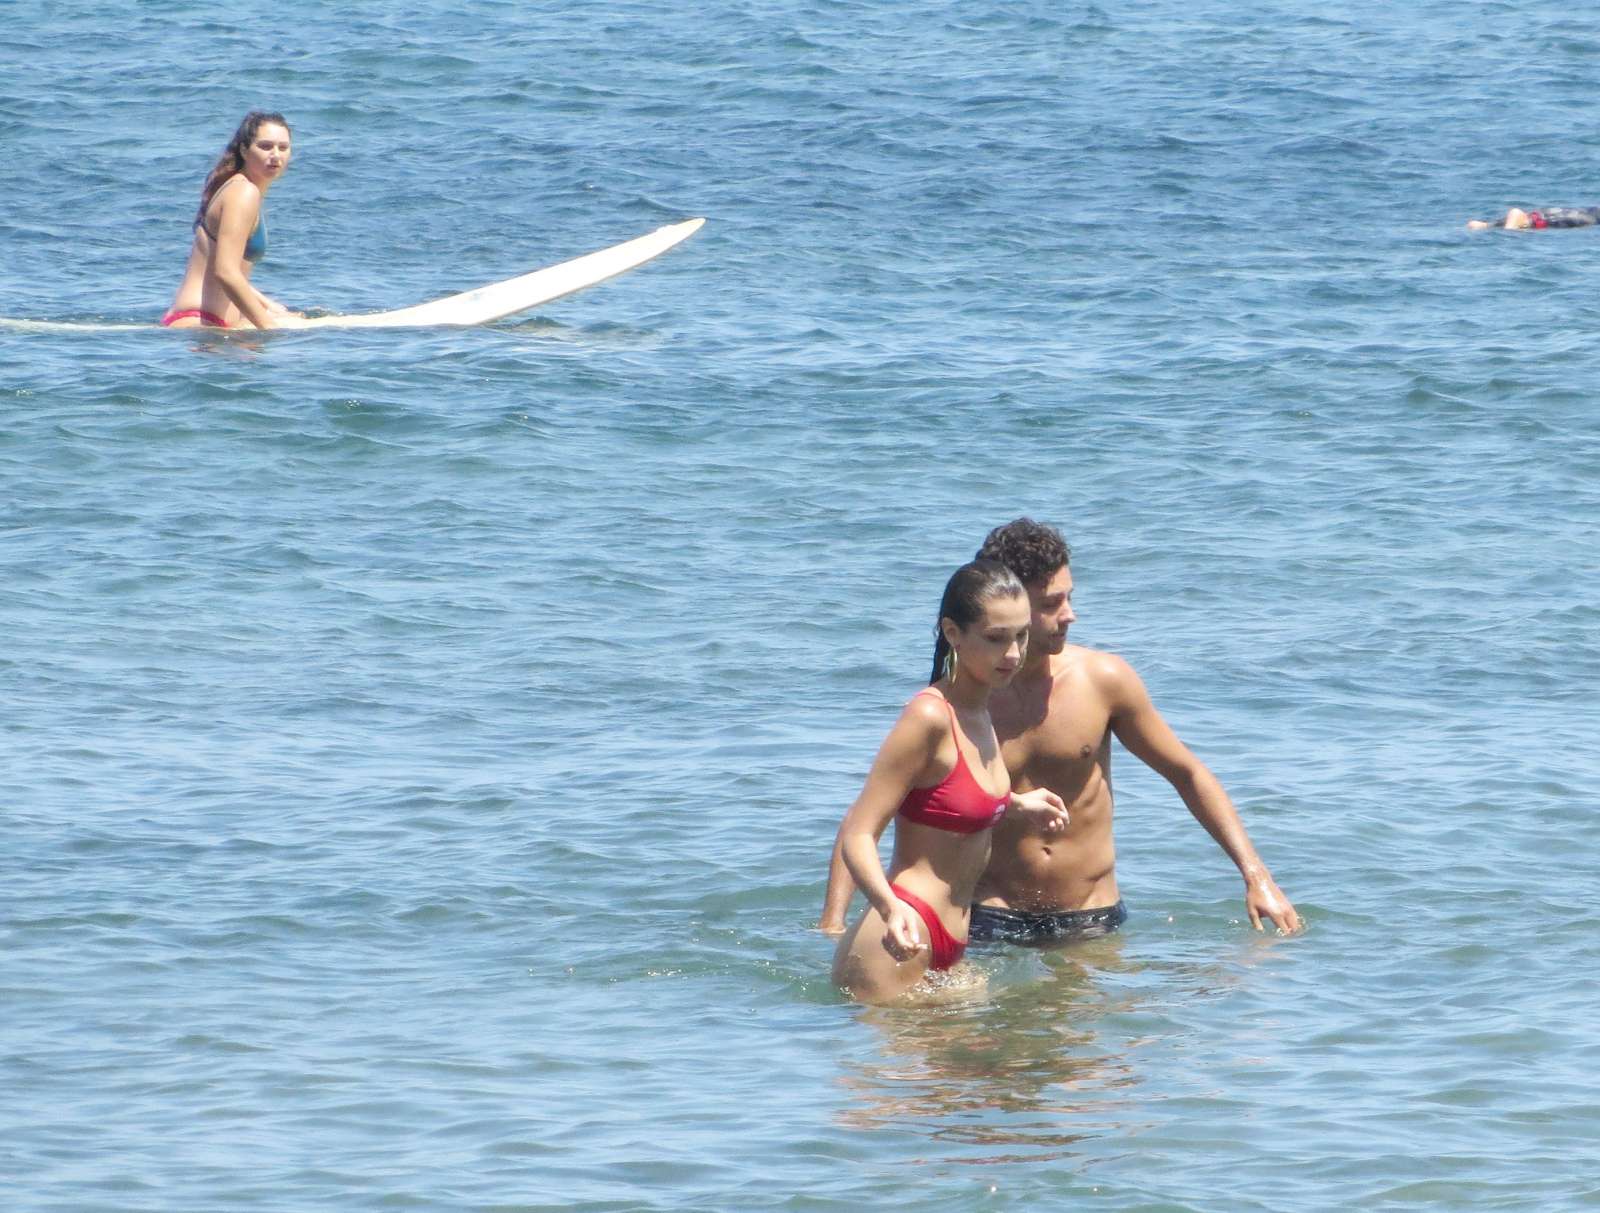 Bella Hadid in Red Bikini on the beach in Malibu